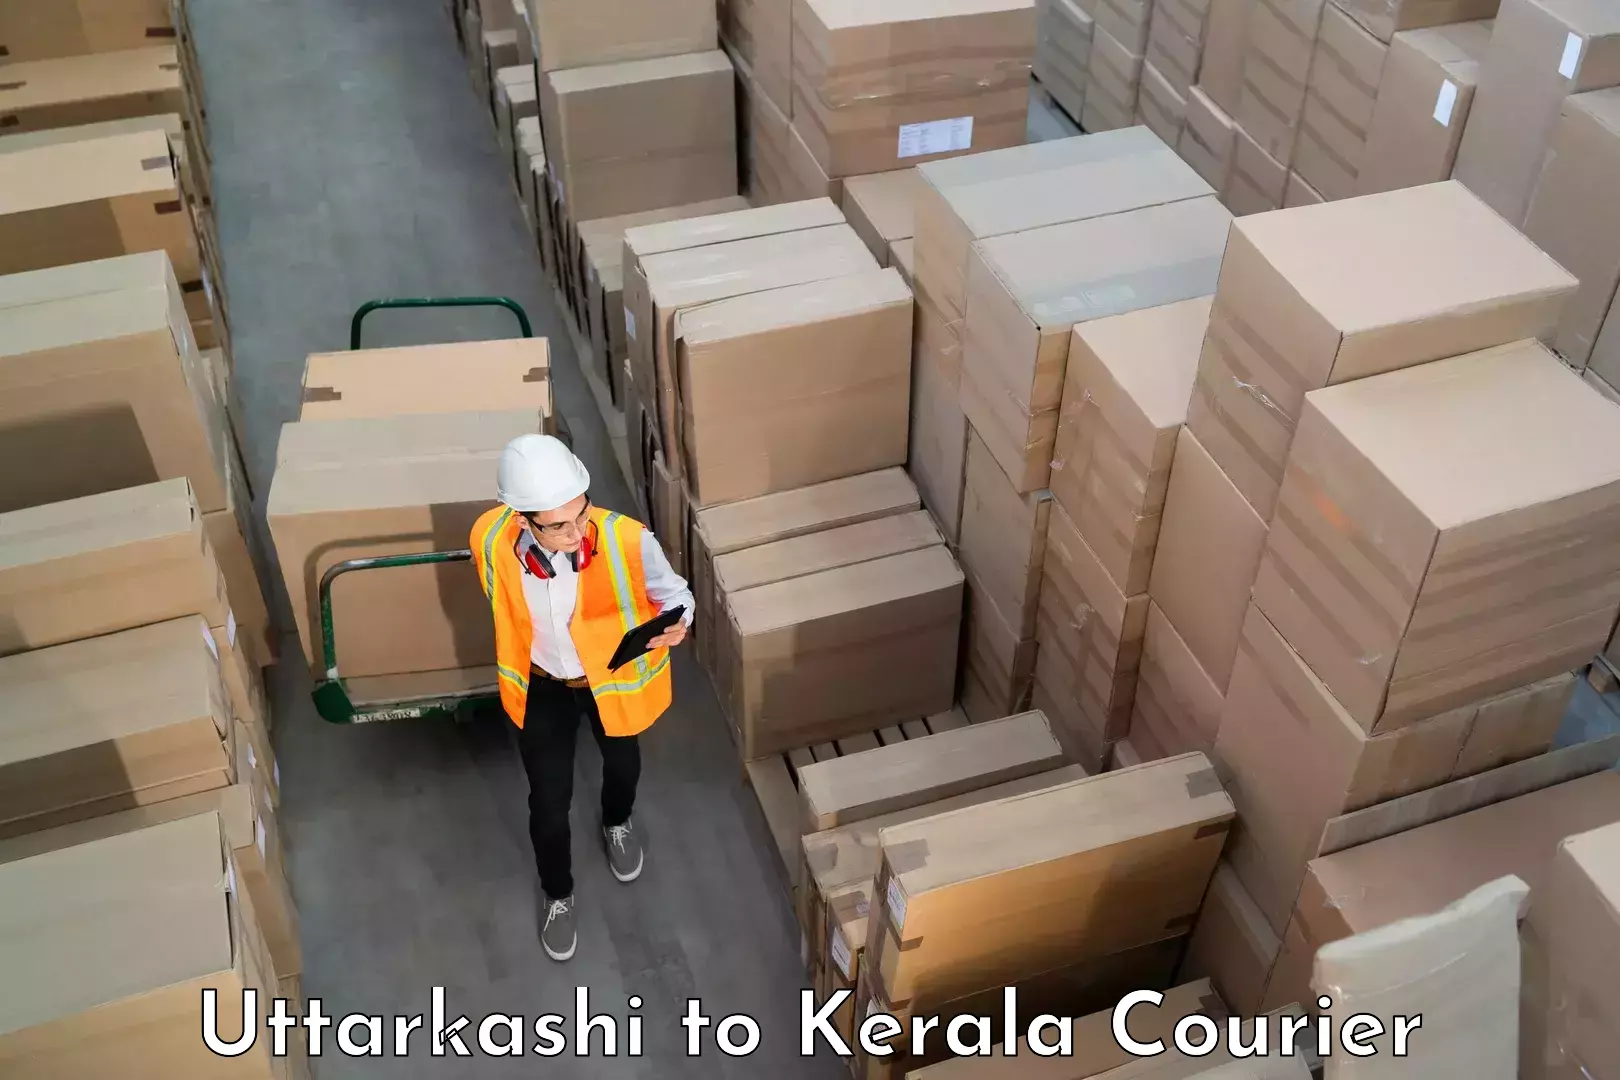 Baggage delivery technology Uttarkashi to Karunagappally